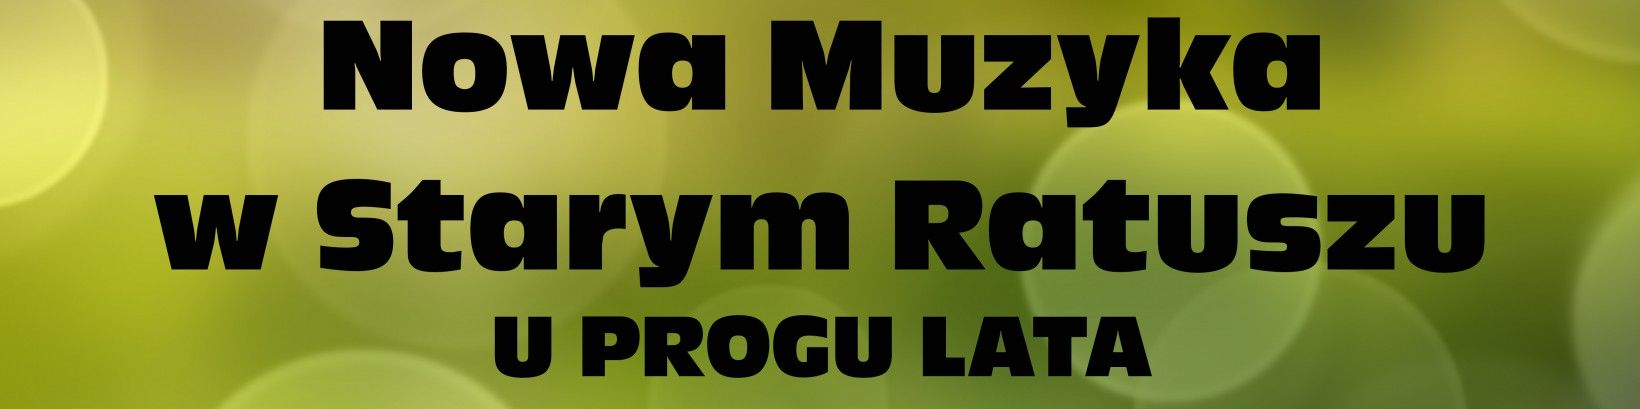 Nowa Muzyka w Starym Ratuszu / U progu lata